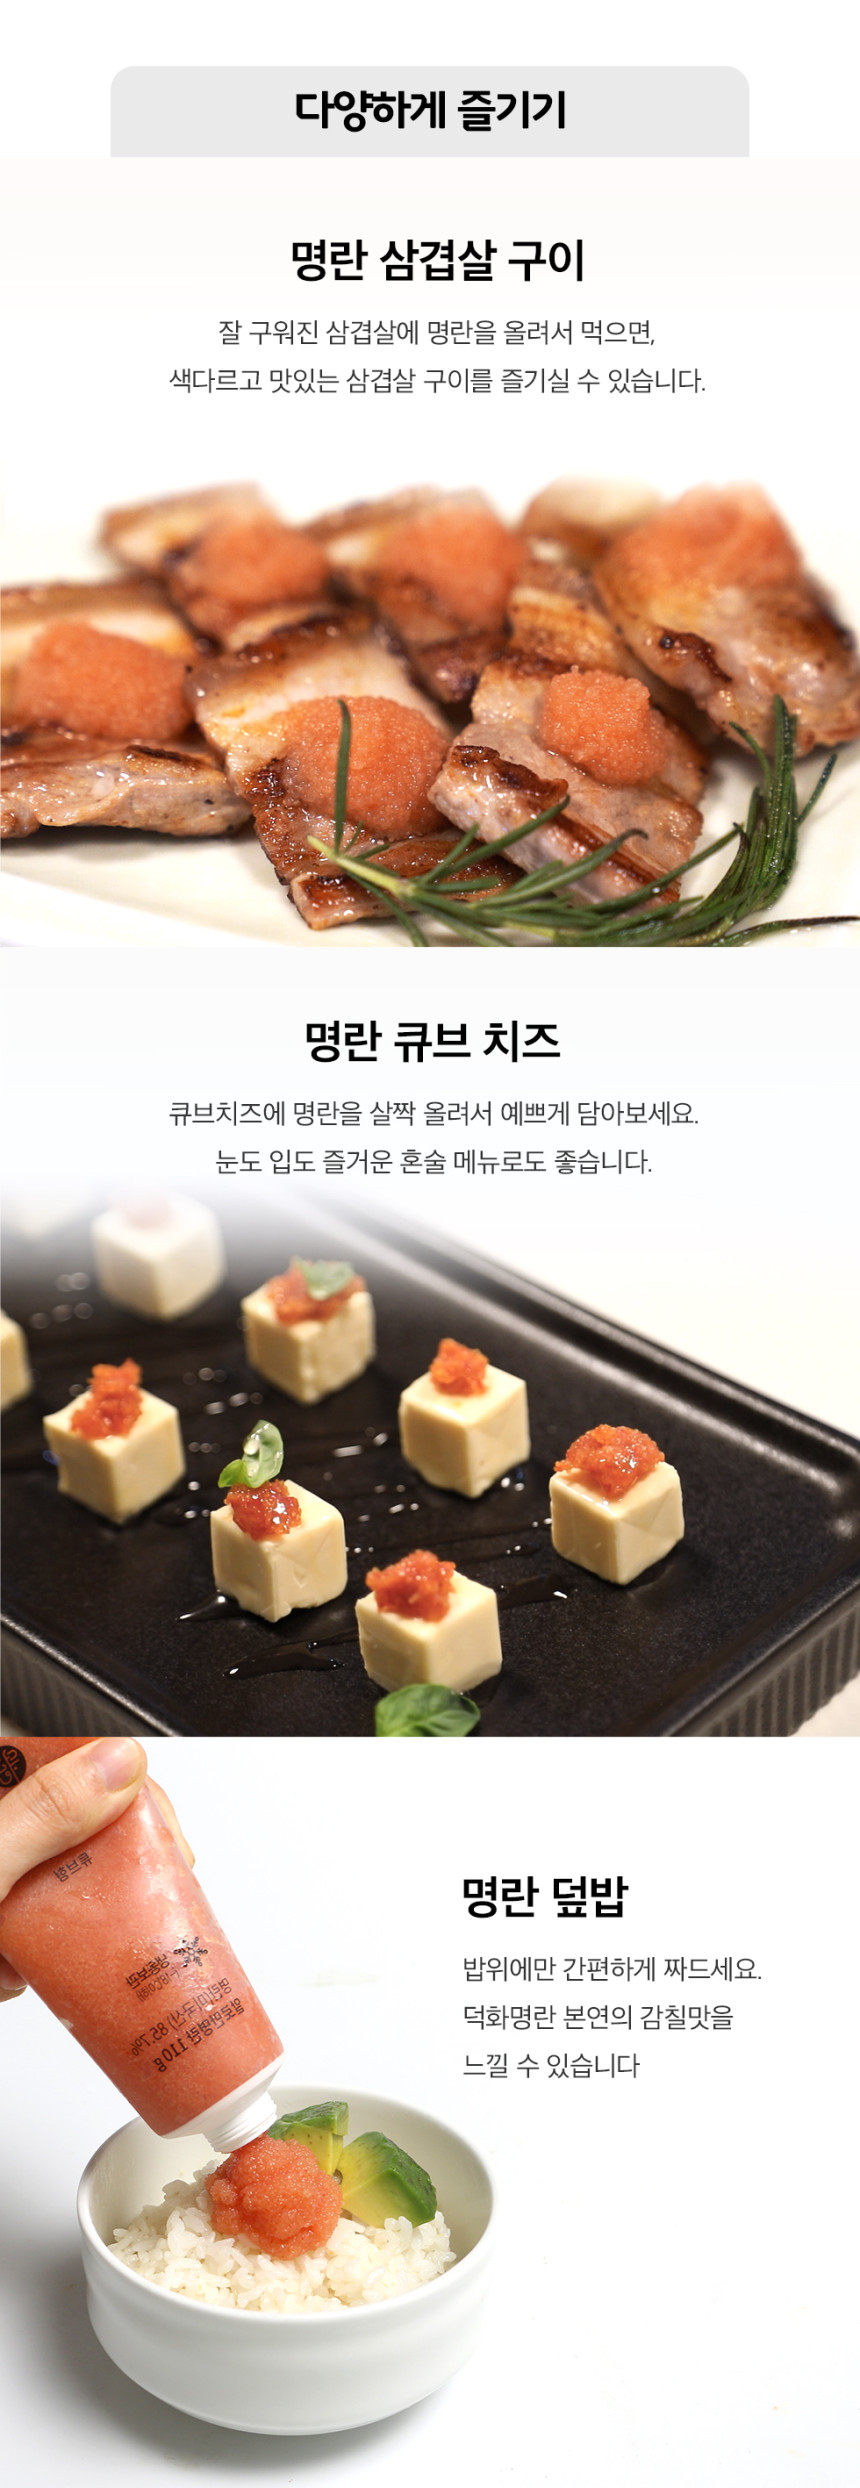 韓國食品-[Thedndshop] 枝裝明太魚醬 110g